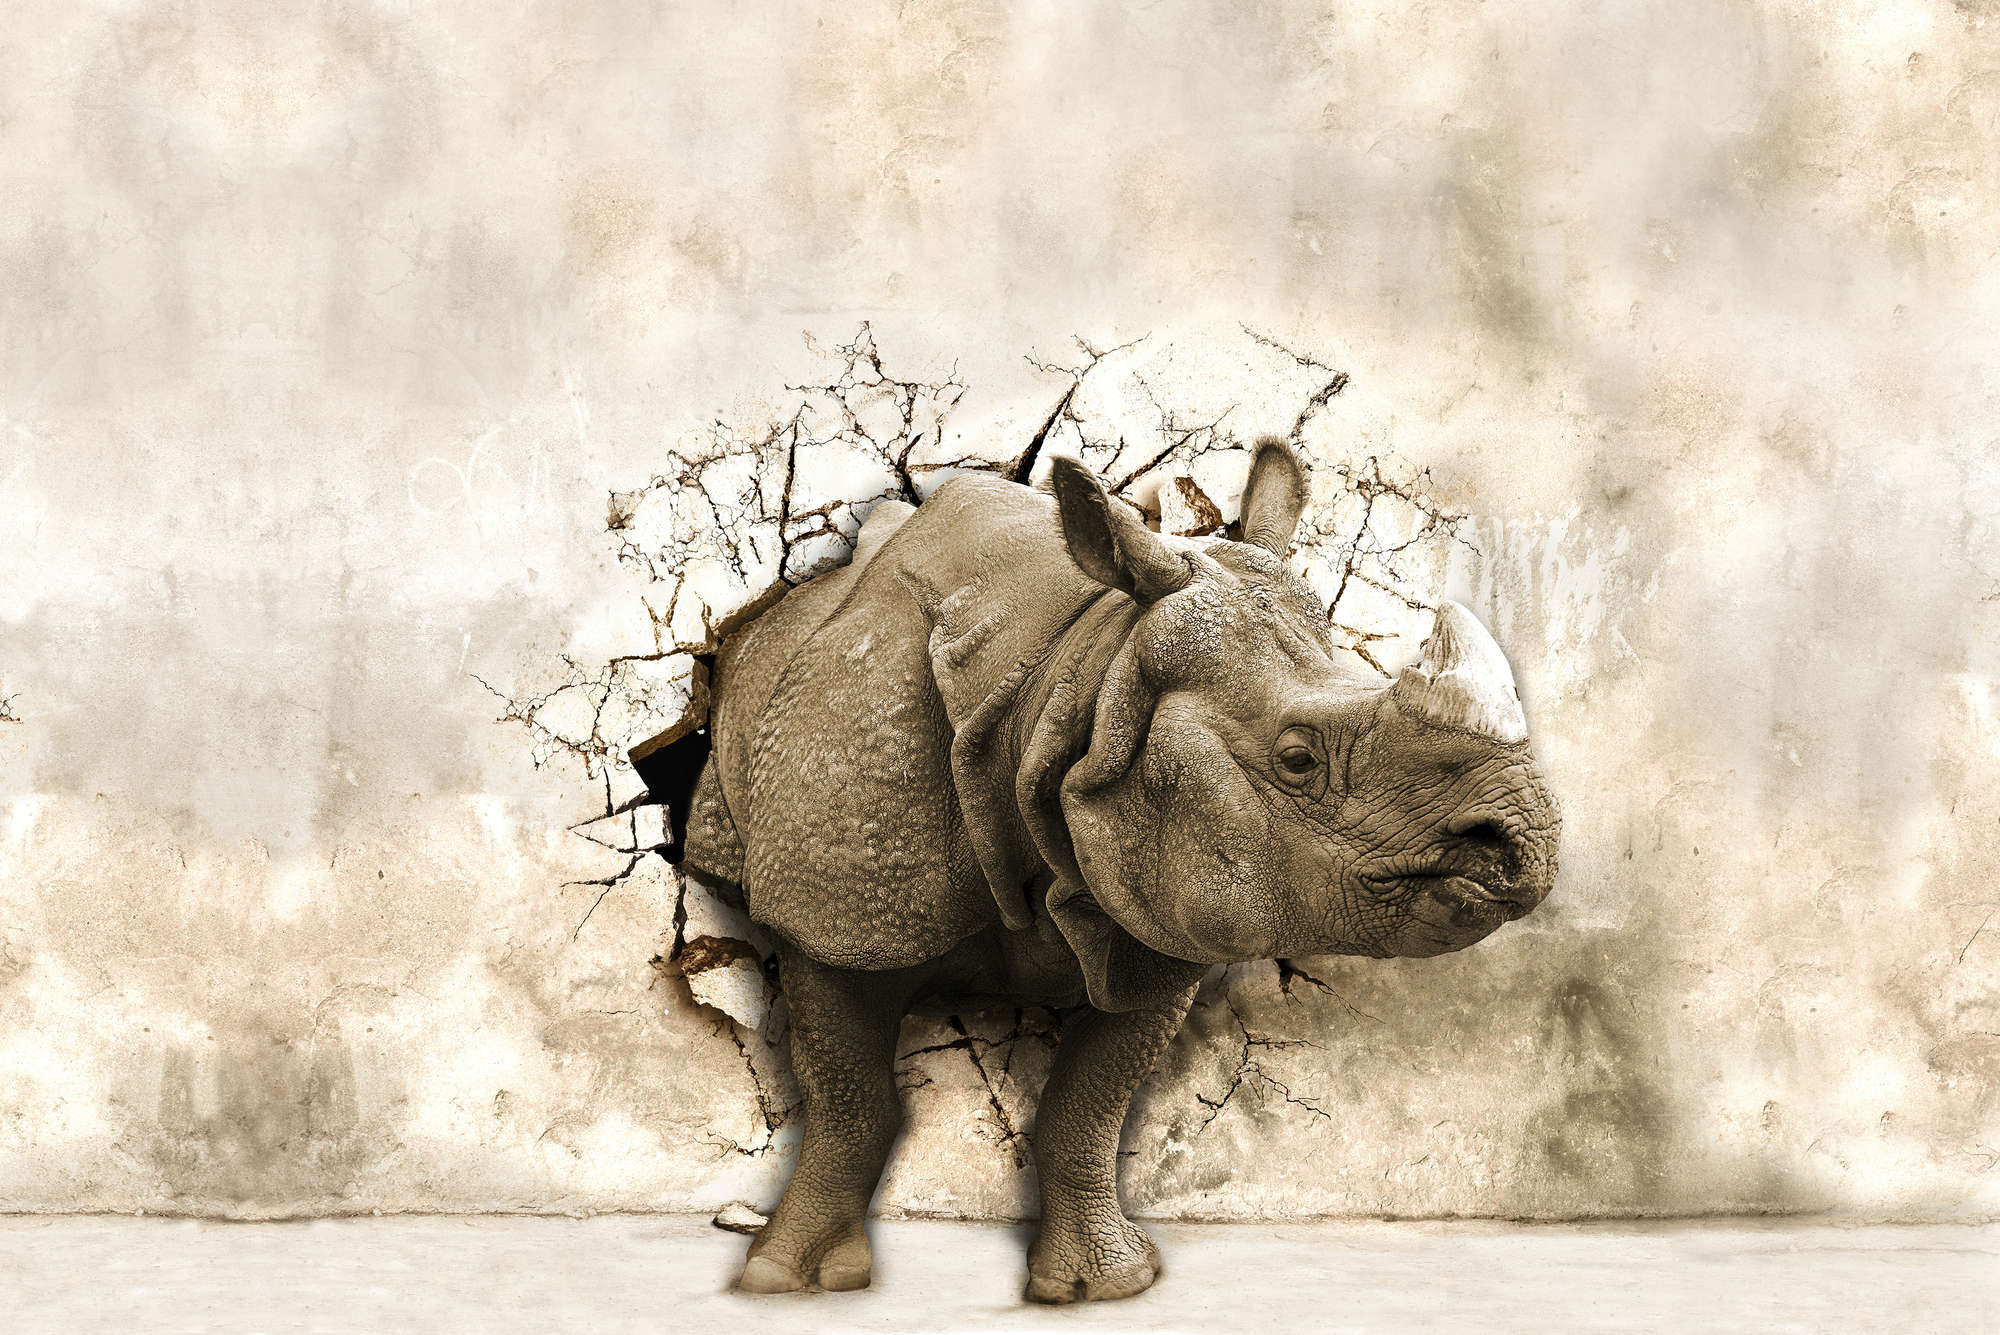             Motivo animale murale rinoceronte nella parete su pile testurizzato
        